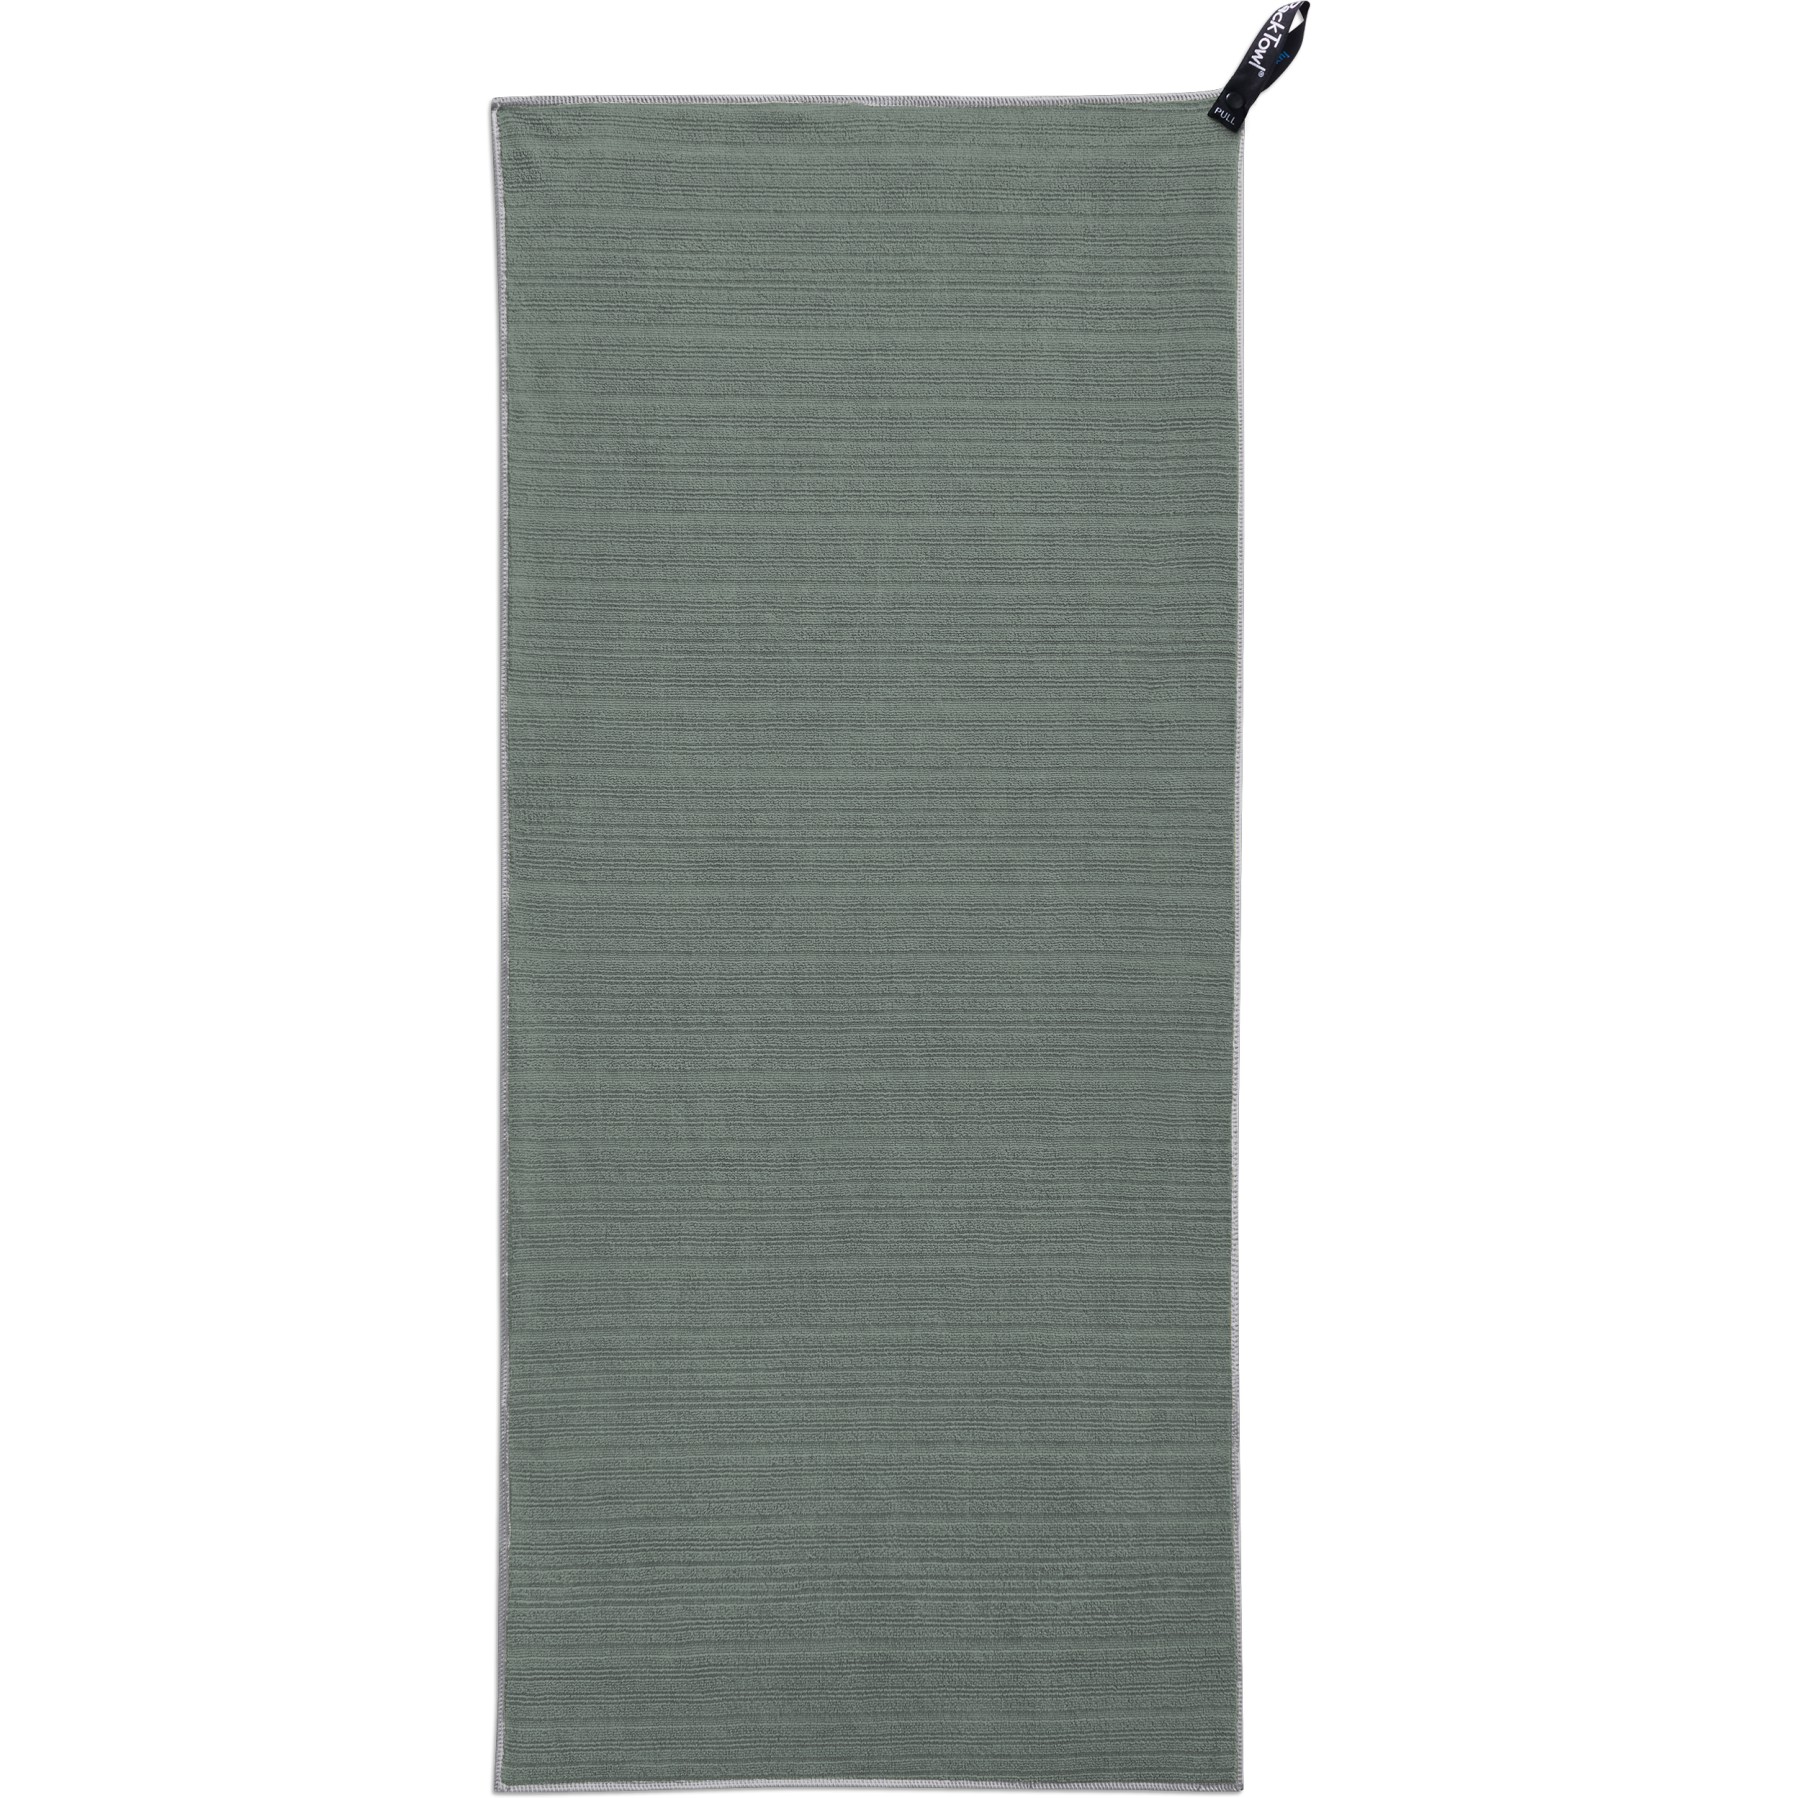 Produktbild von PackTowl Luxe Body Handtuch - sage